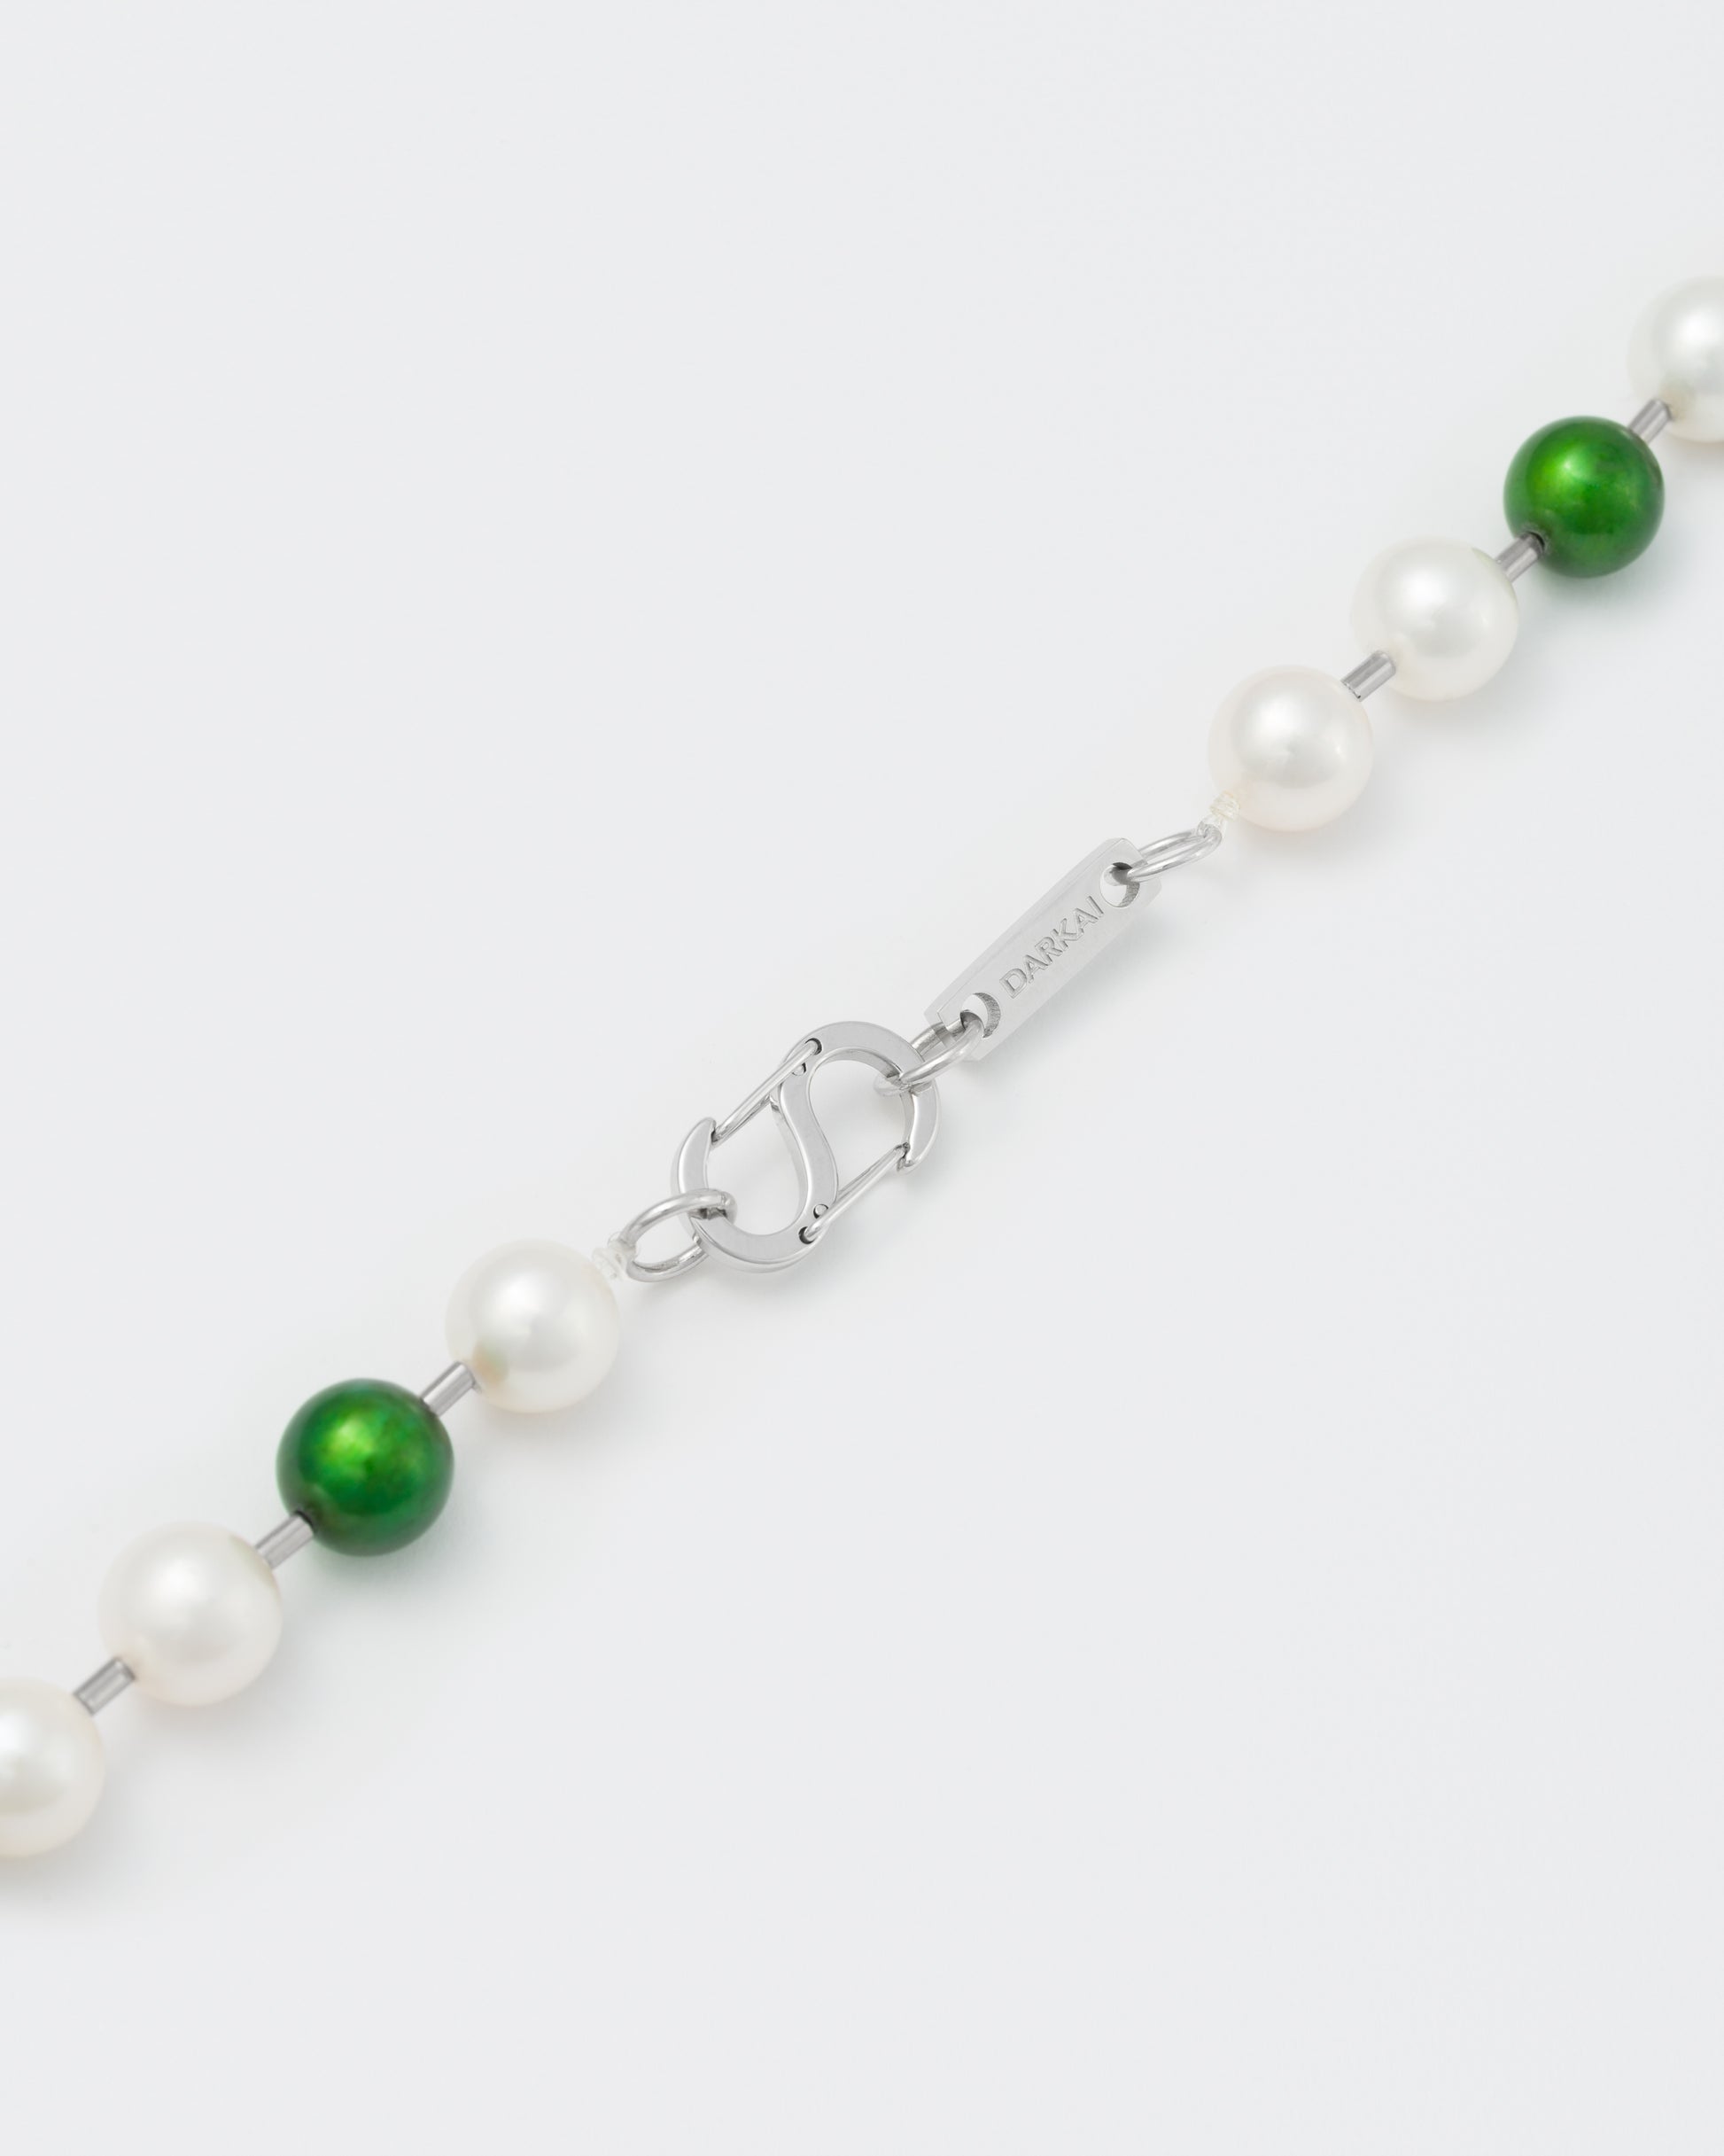 DARKAI eden pearl necklace detail